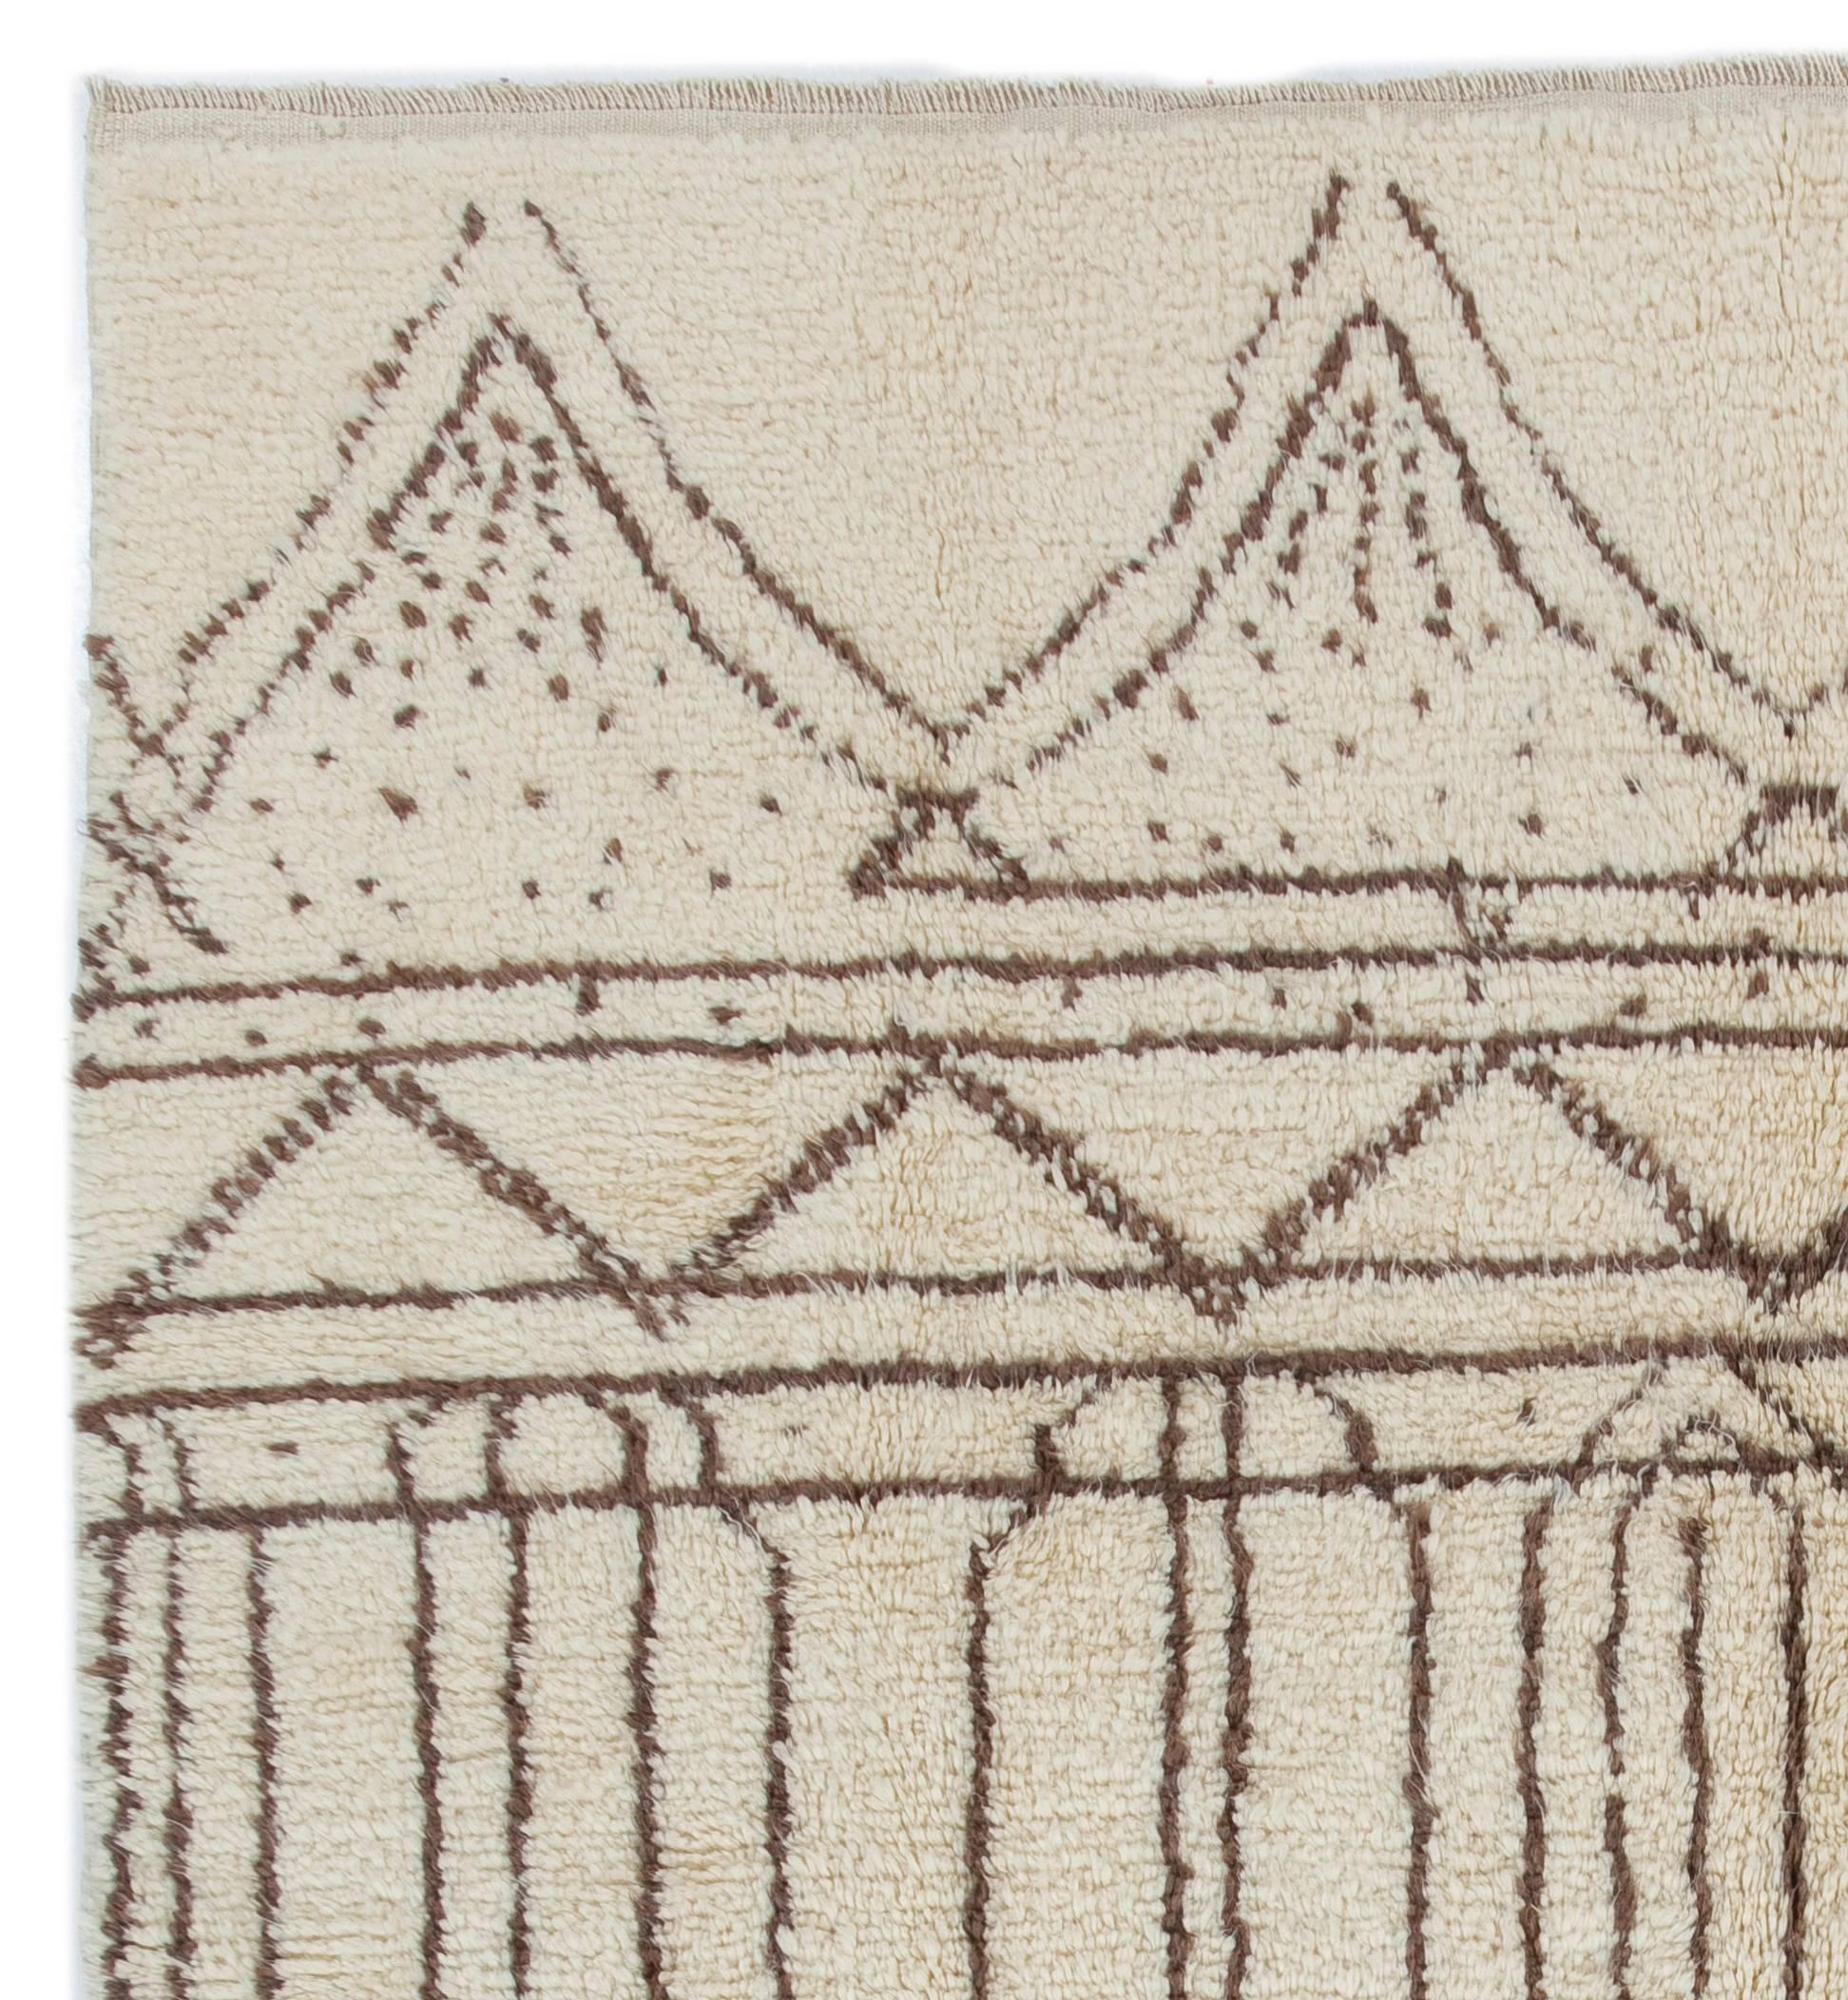 Ein moderner, handgeknüpfter marokkanischer Teppich aus natürlicher, ungefärbter elfenbeinfarbener und hellbrauner Schafwolle. 

100% natürliche, handgesponnene Wolle von bester Qualität.

Diese handgeknüpften Teppiche werden von Grund auf in